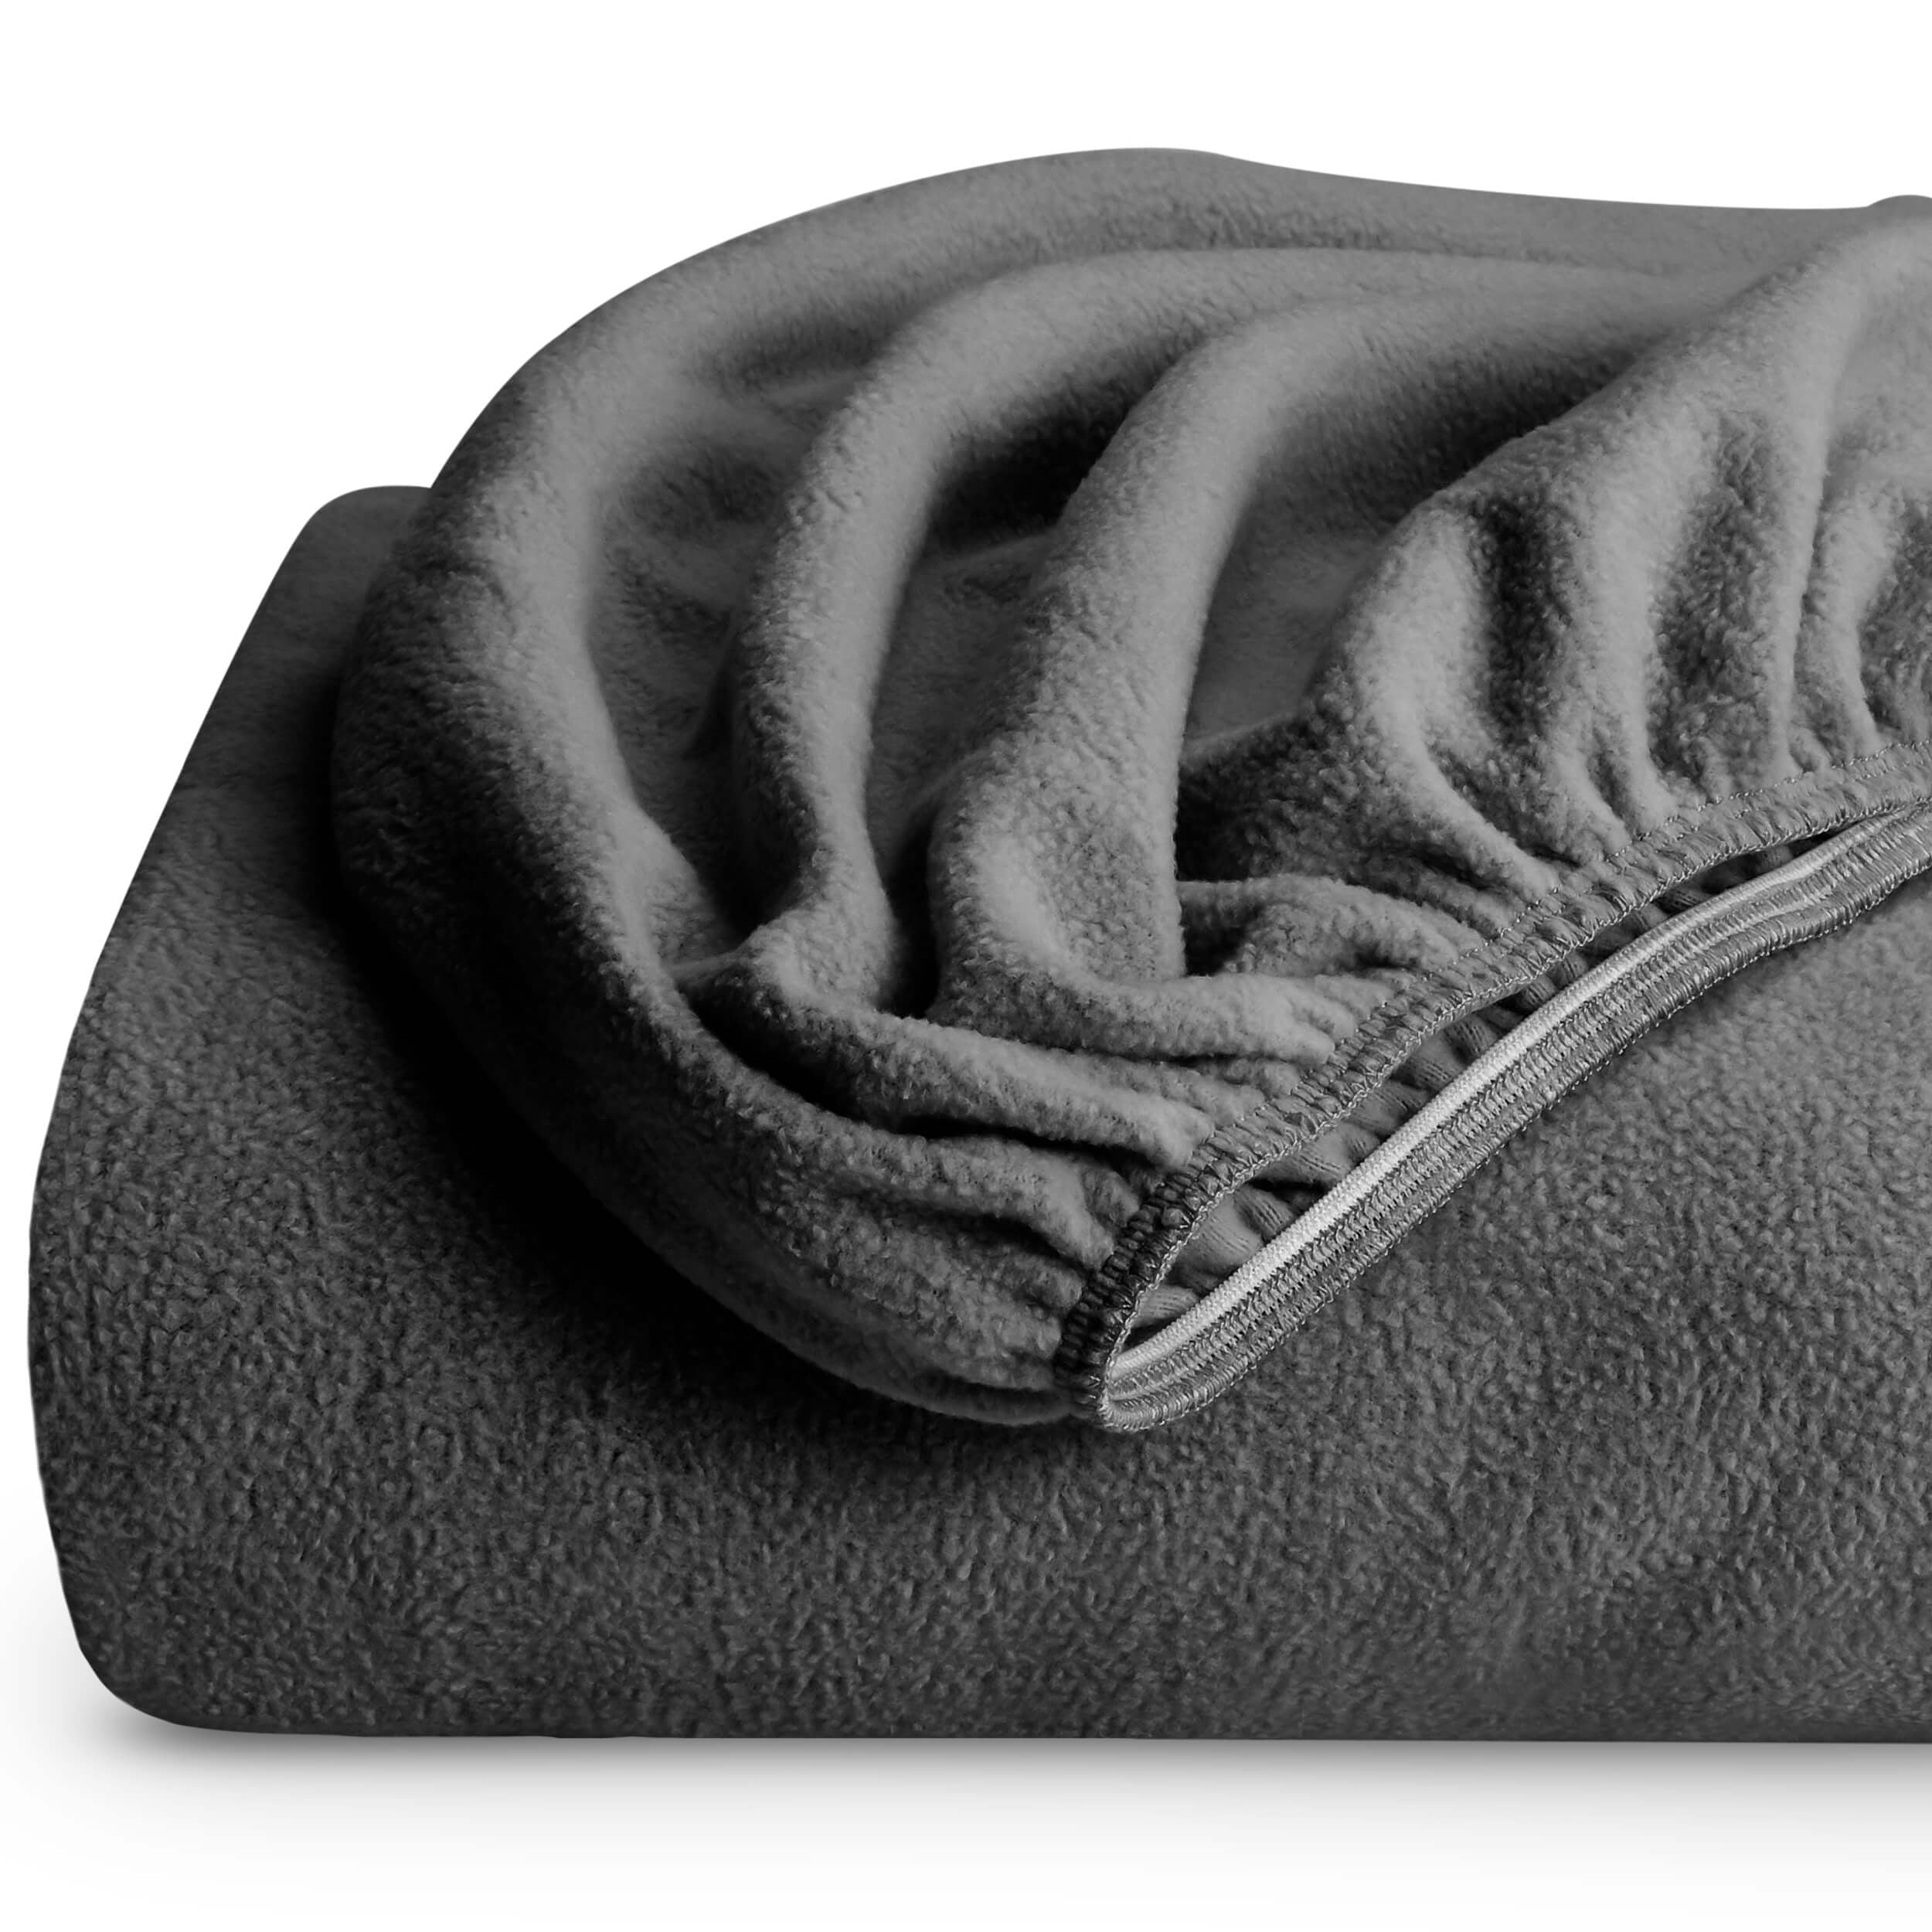 Super Soft  Plush Fleece Sheet Set with 16" Deep Pocket Wrinkle Resistant Warm 